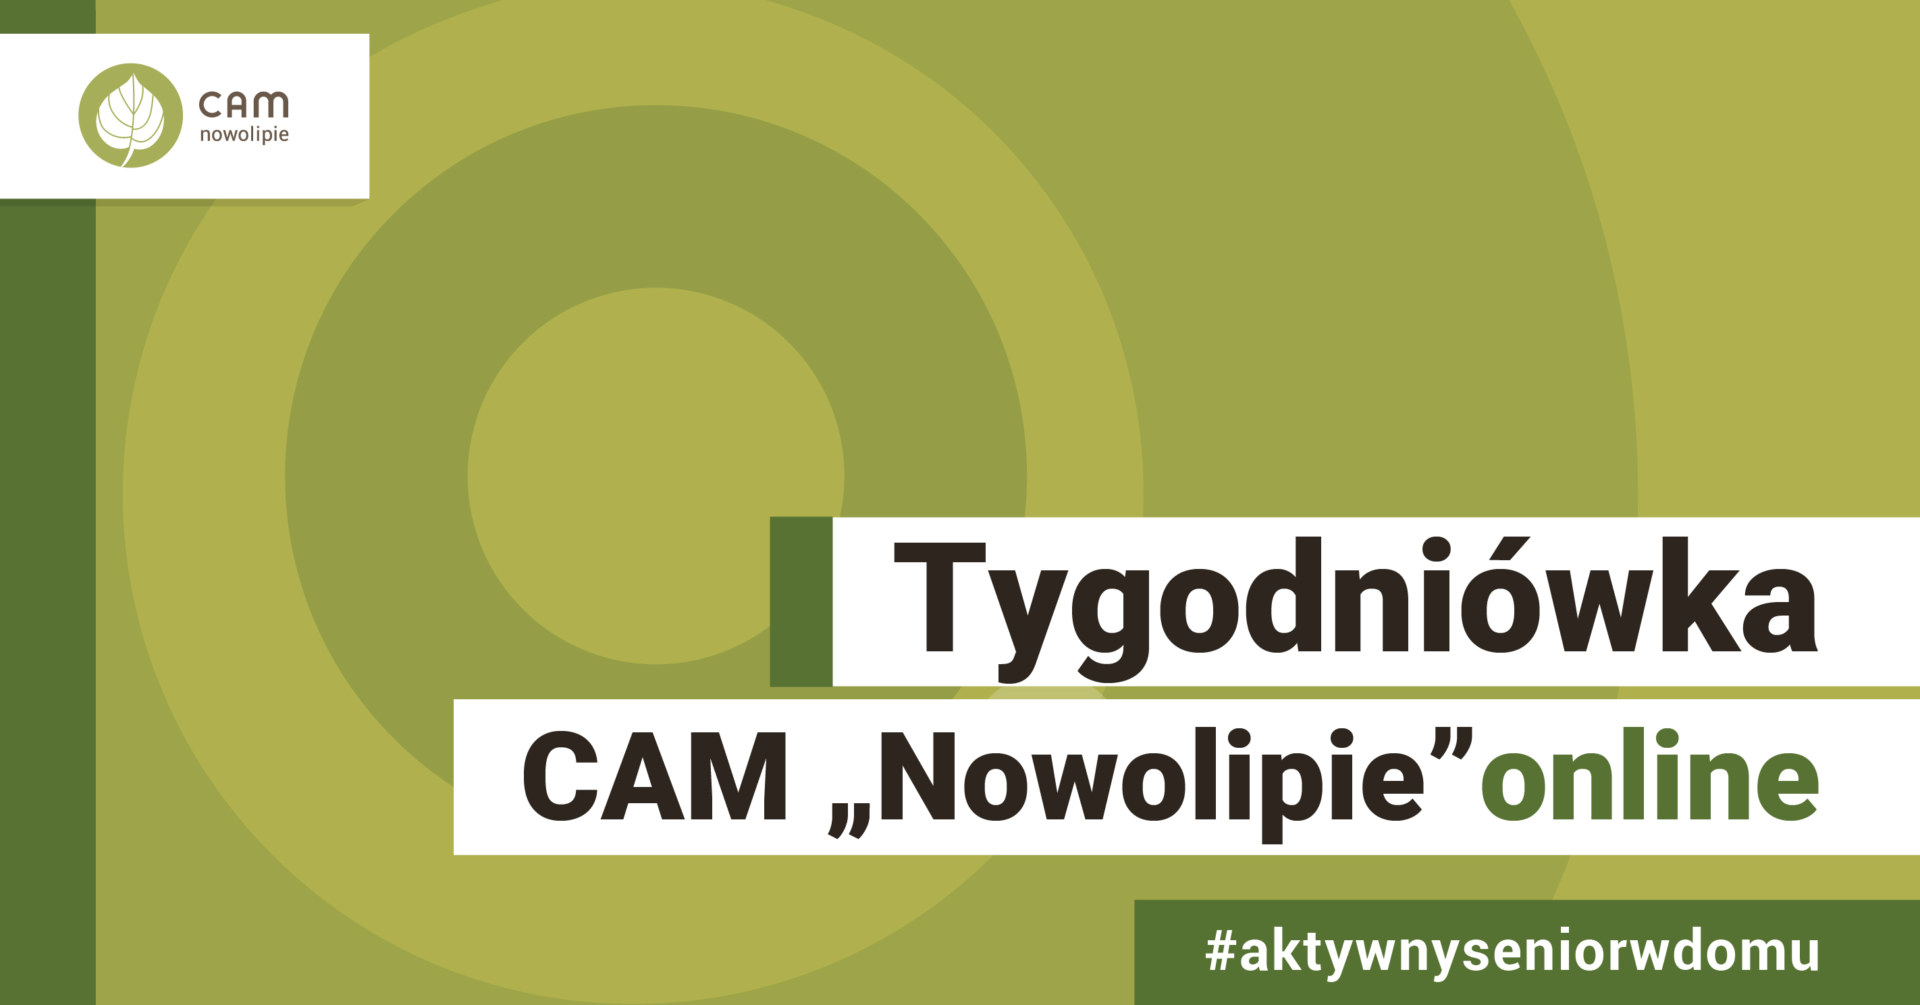 Na zielonym tle napis Tygodniówka CAM "Nowolipie" online. Pod nim #aktywnyseniorwdomu.